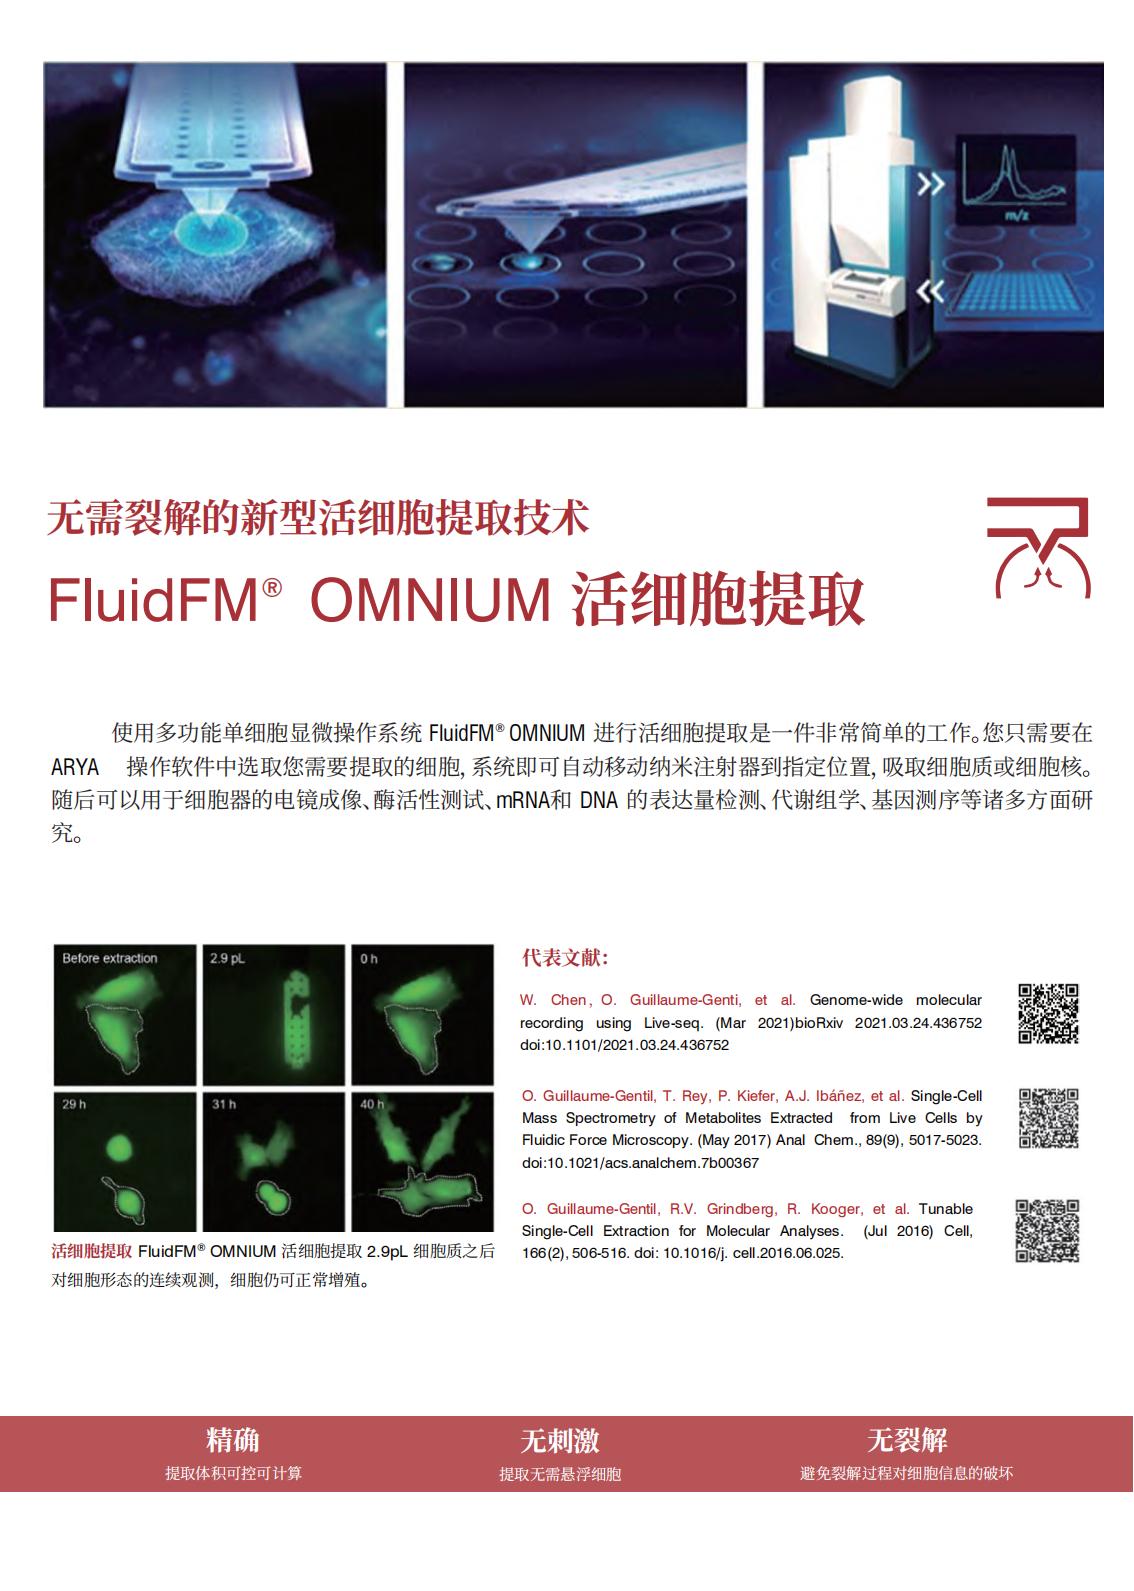 多功能单细胞显微操作系统FluidFM_OMNIUM(图10)